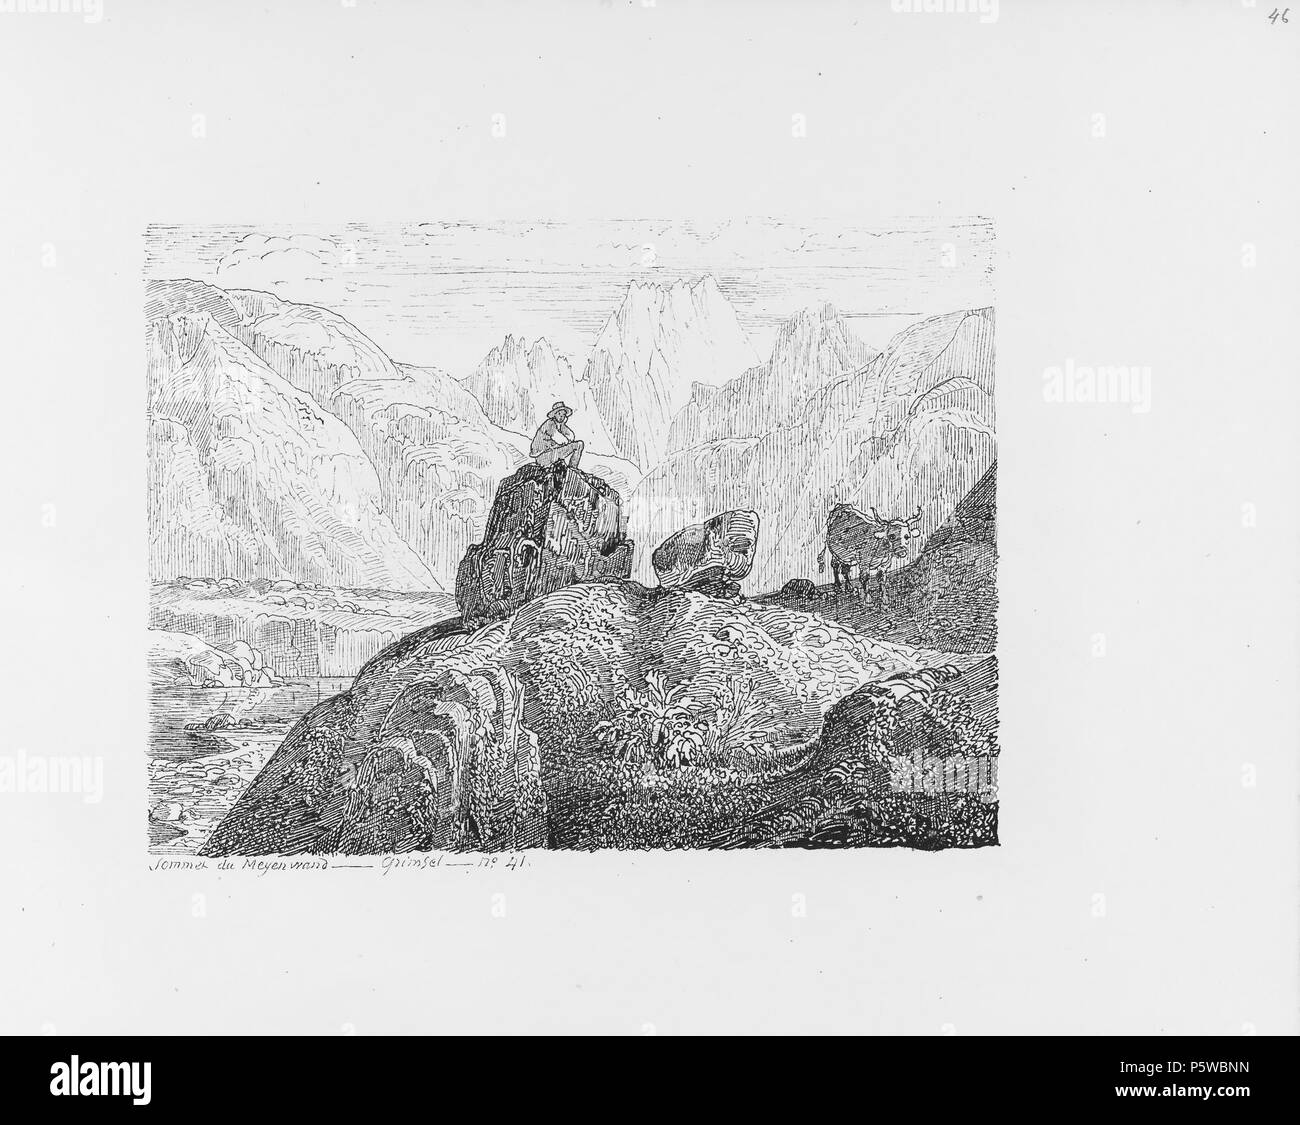 322 CH-NB-Voyage autour du Mont-Blanc dans les vallées d'Hérens de Zermatt et au Grimsel 1843-nbdig-19161-047 Stock Photo